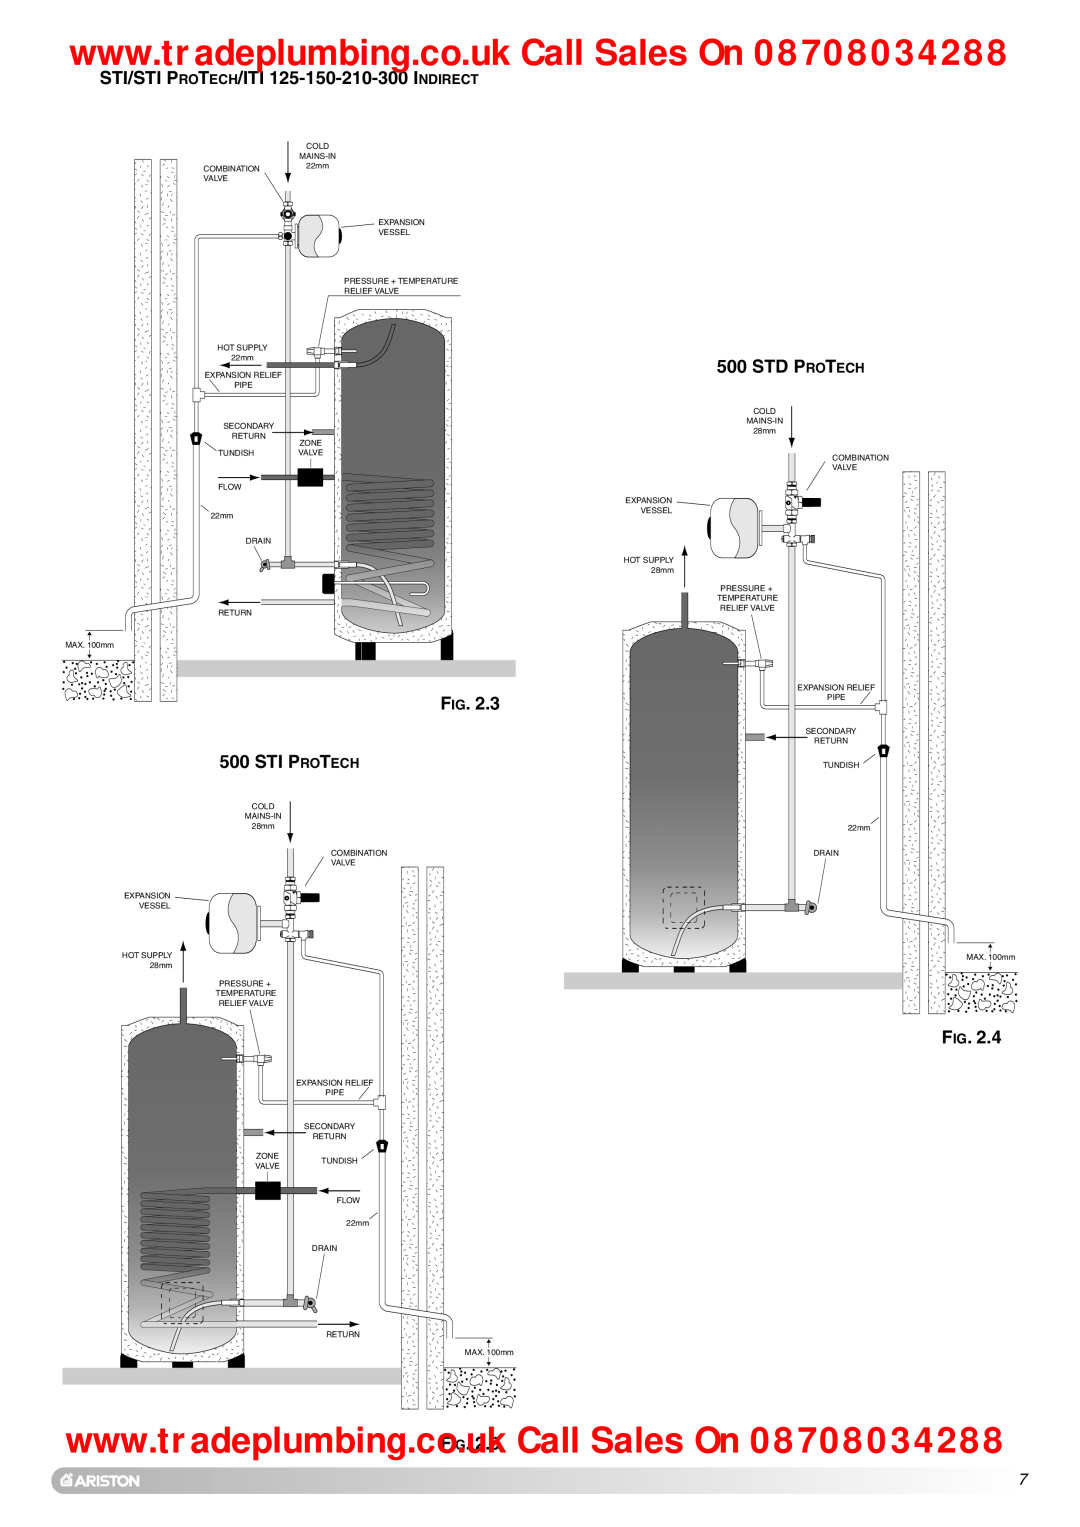 Ariston Unvented Hot Water Storage Cylinders manual STI/STI PROTECH/ITI 125-150-210-300 INDIRECT, Sti Protech, Std Protech 